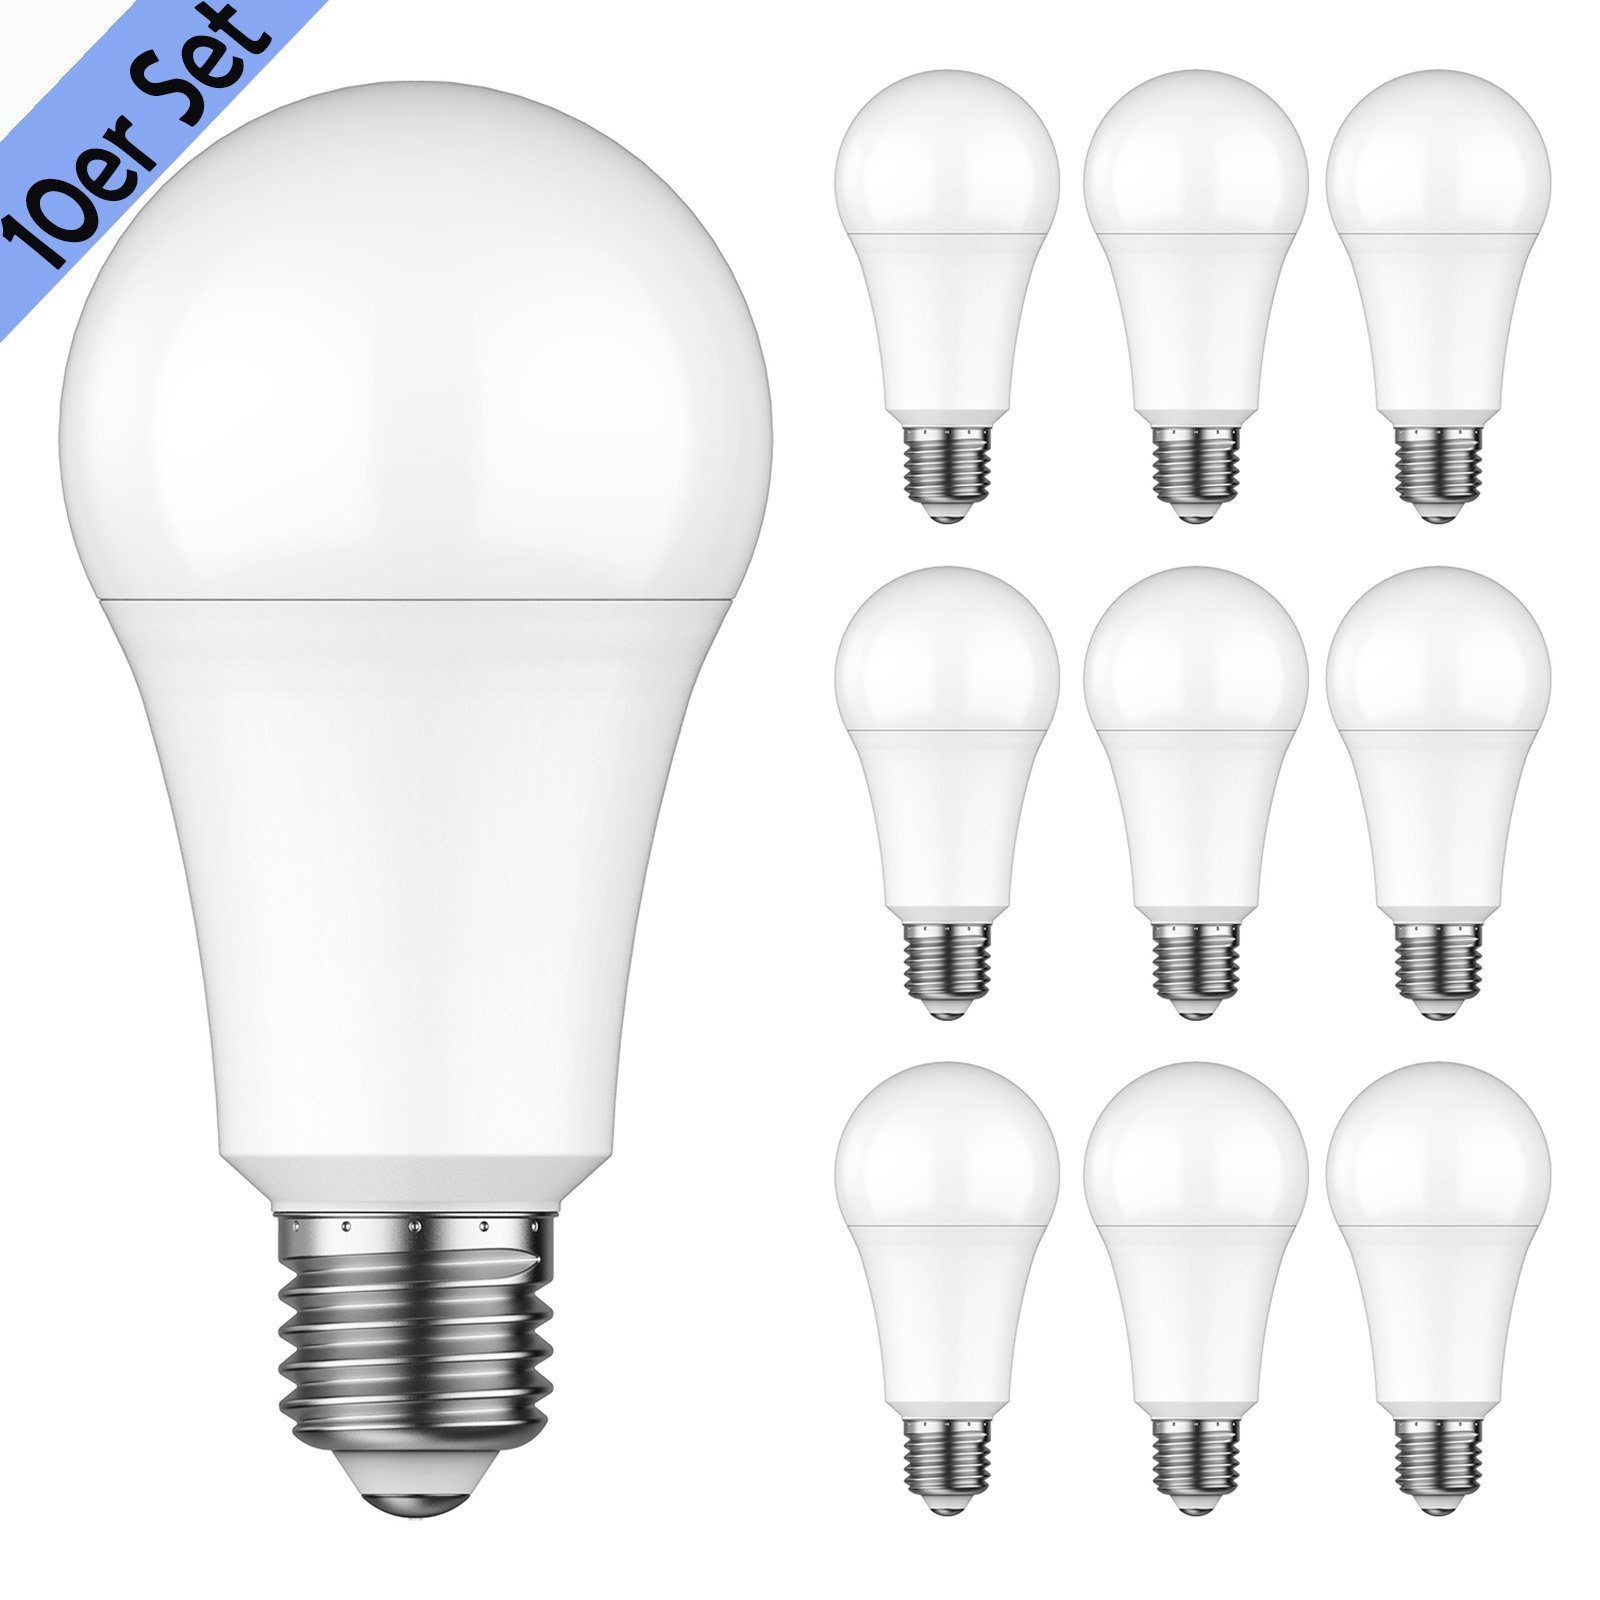 MUPOO LED-Leuchtmittel LED-Glühbirne 10er Pack LED Lampe E27 12W, 6500K Weiß, LED Licht